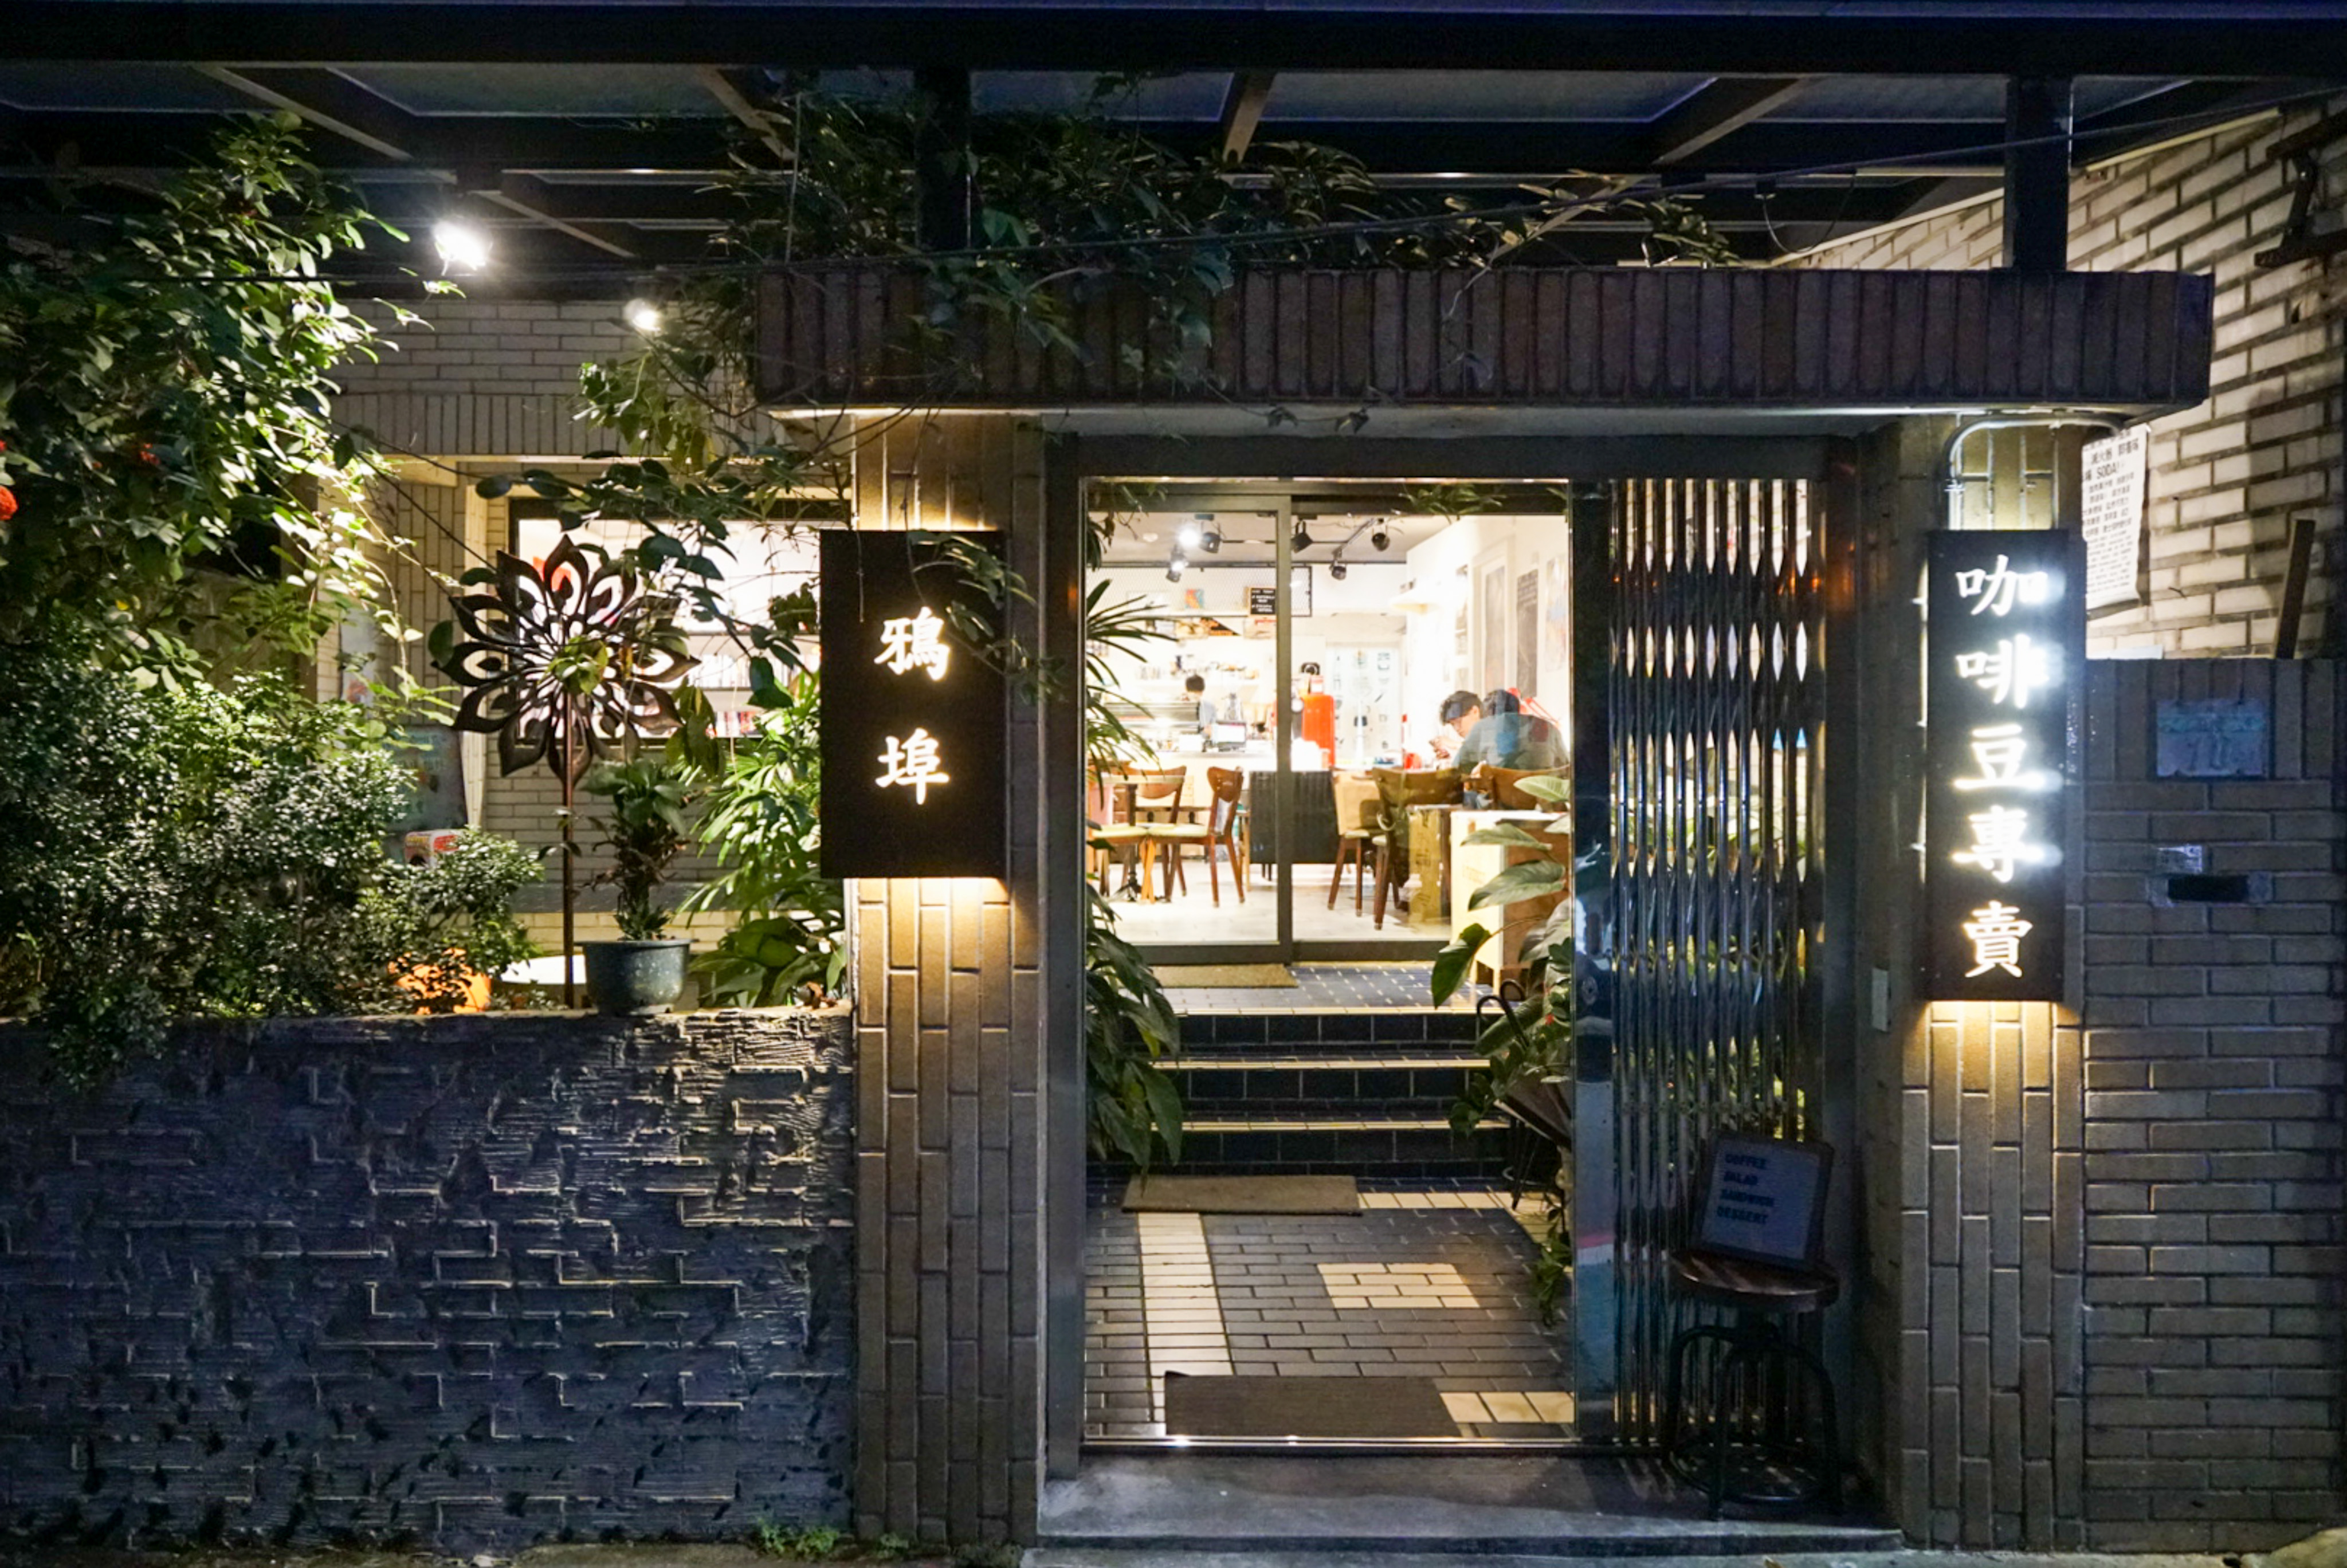 【永康街】鴉埠咖啡二號店，永康街裡鬧中取靜的小夜貓咖啡廳